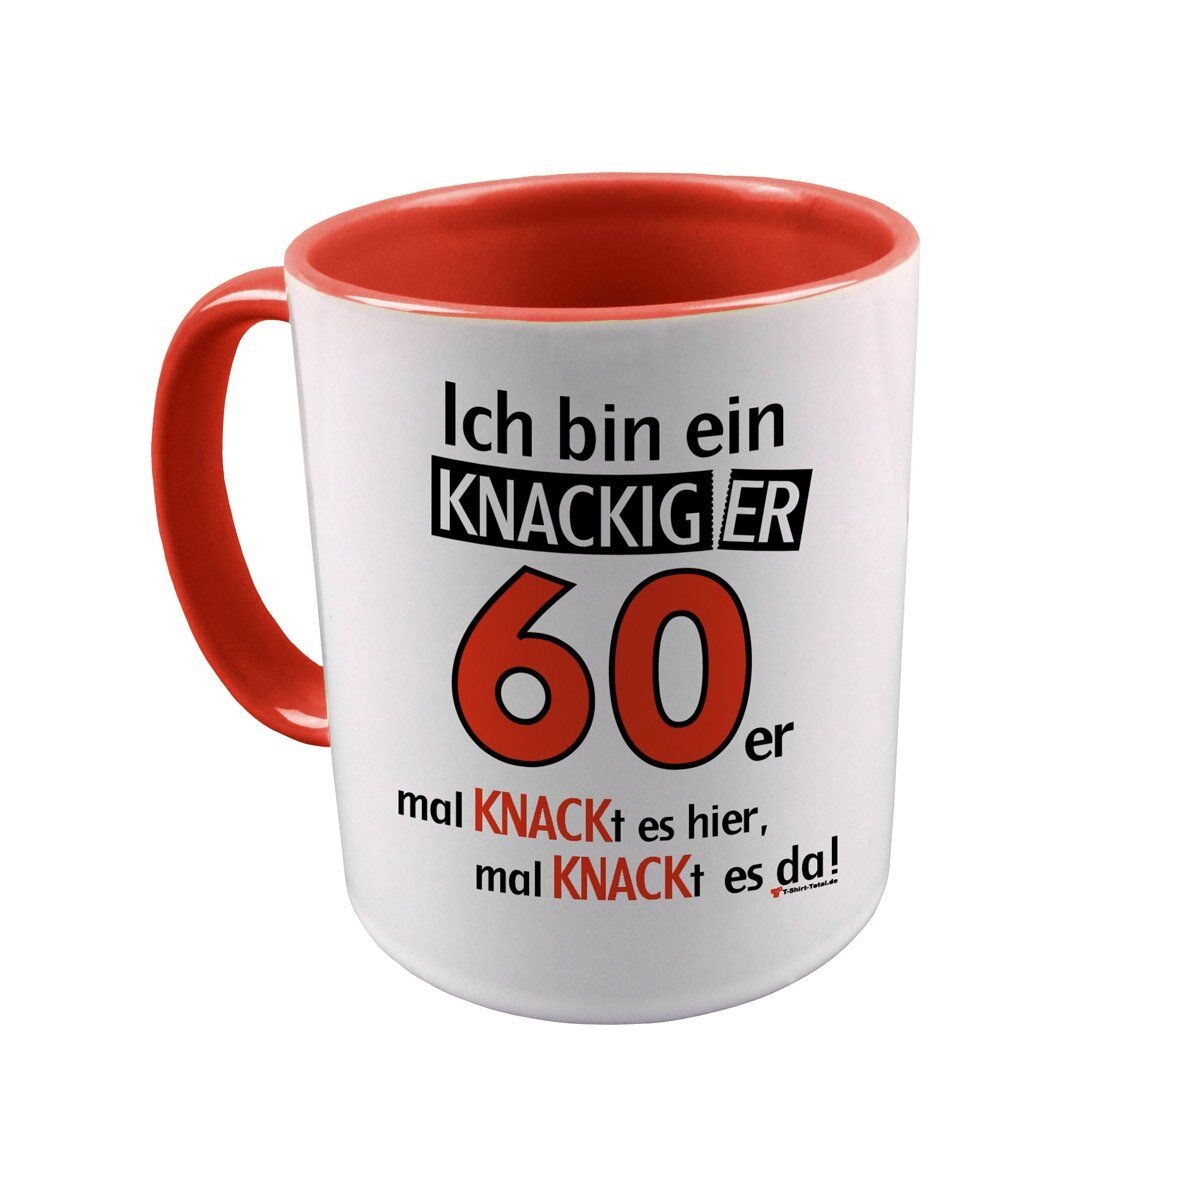 Knackiger 60er Tasse rot / weiß